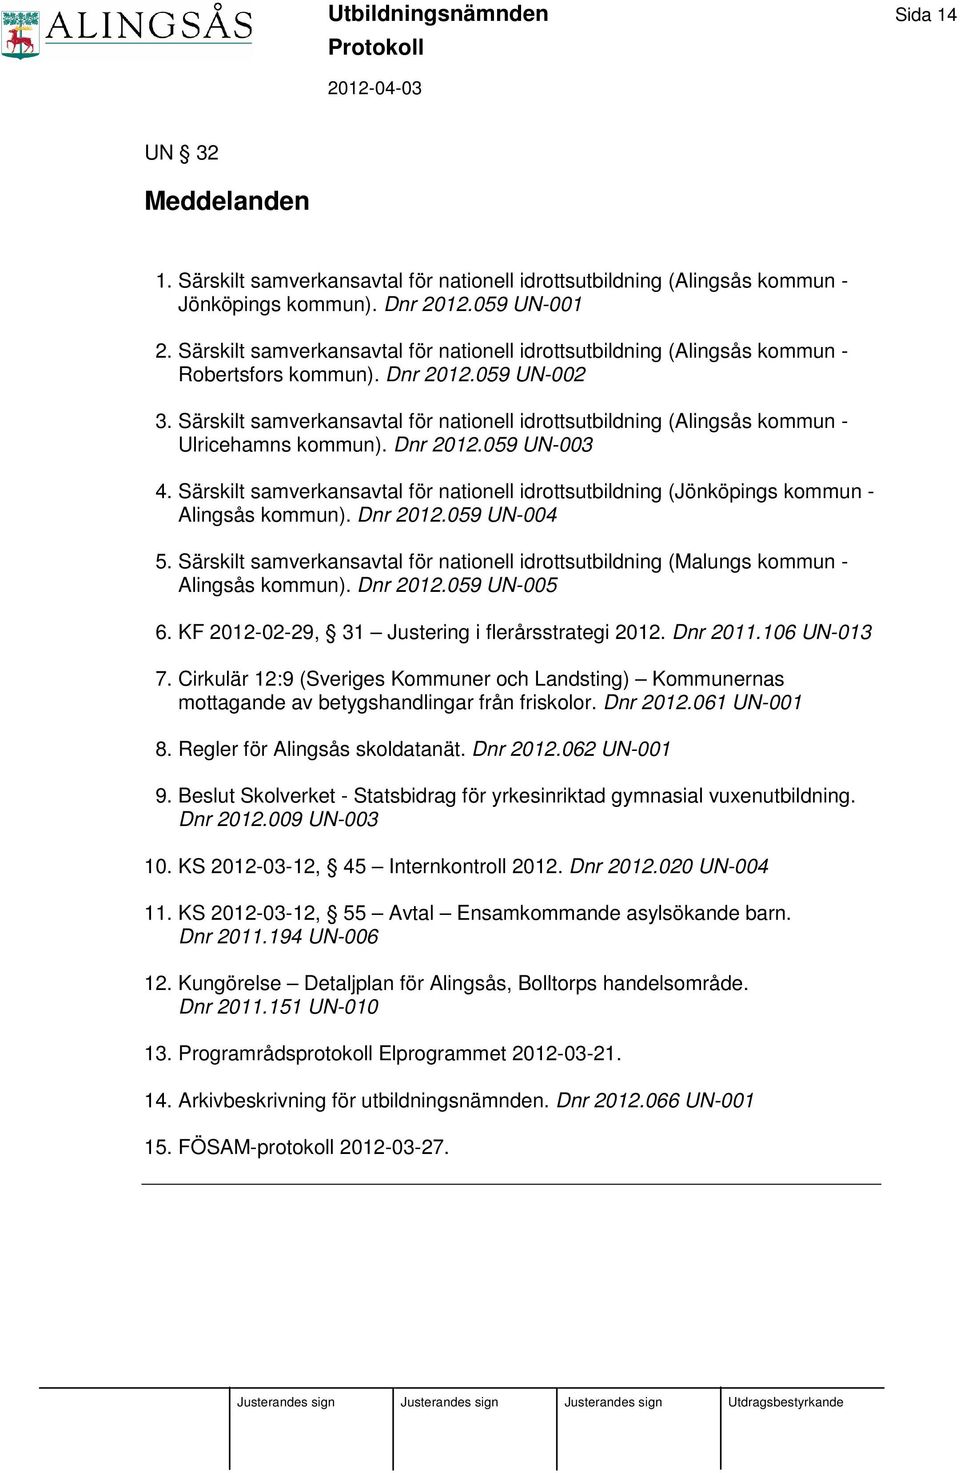 Särskilt samverkansavtal för nationell idrottsutbildning (Alingsås kommun - Ulricehamns kommun). Dnr 2012.059 UN-003 4.